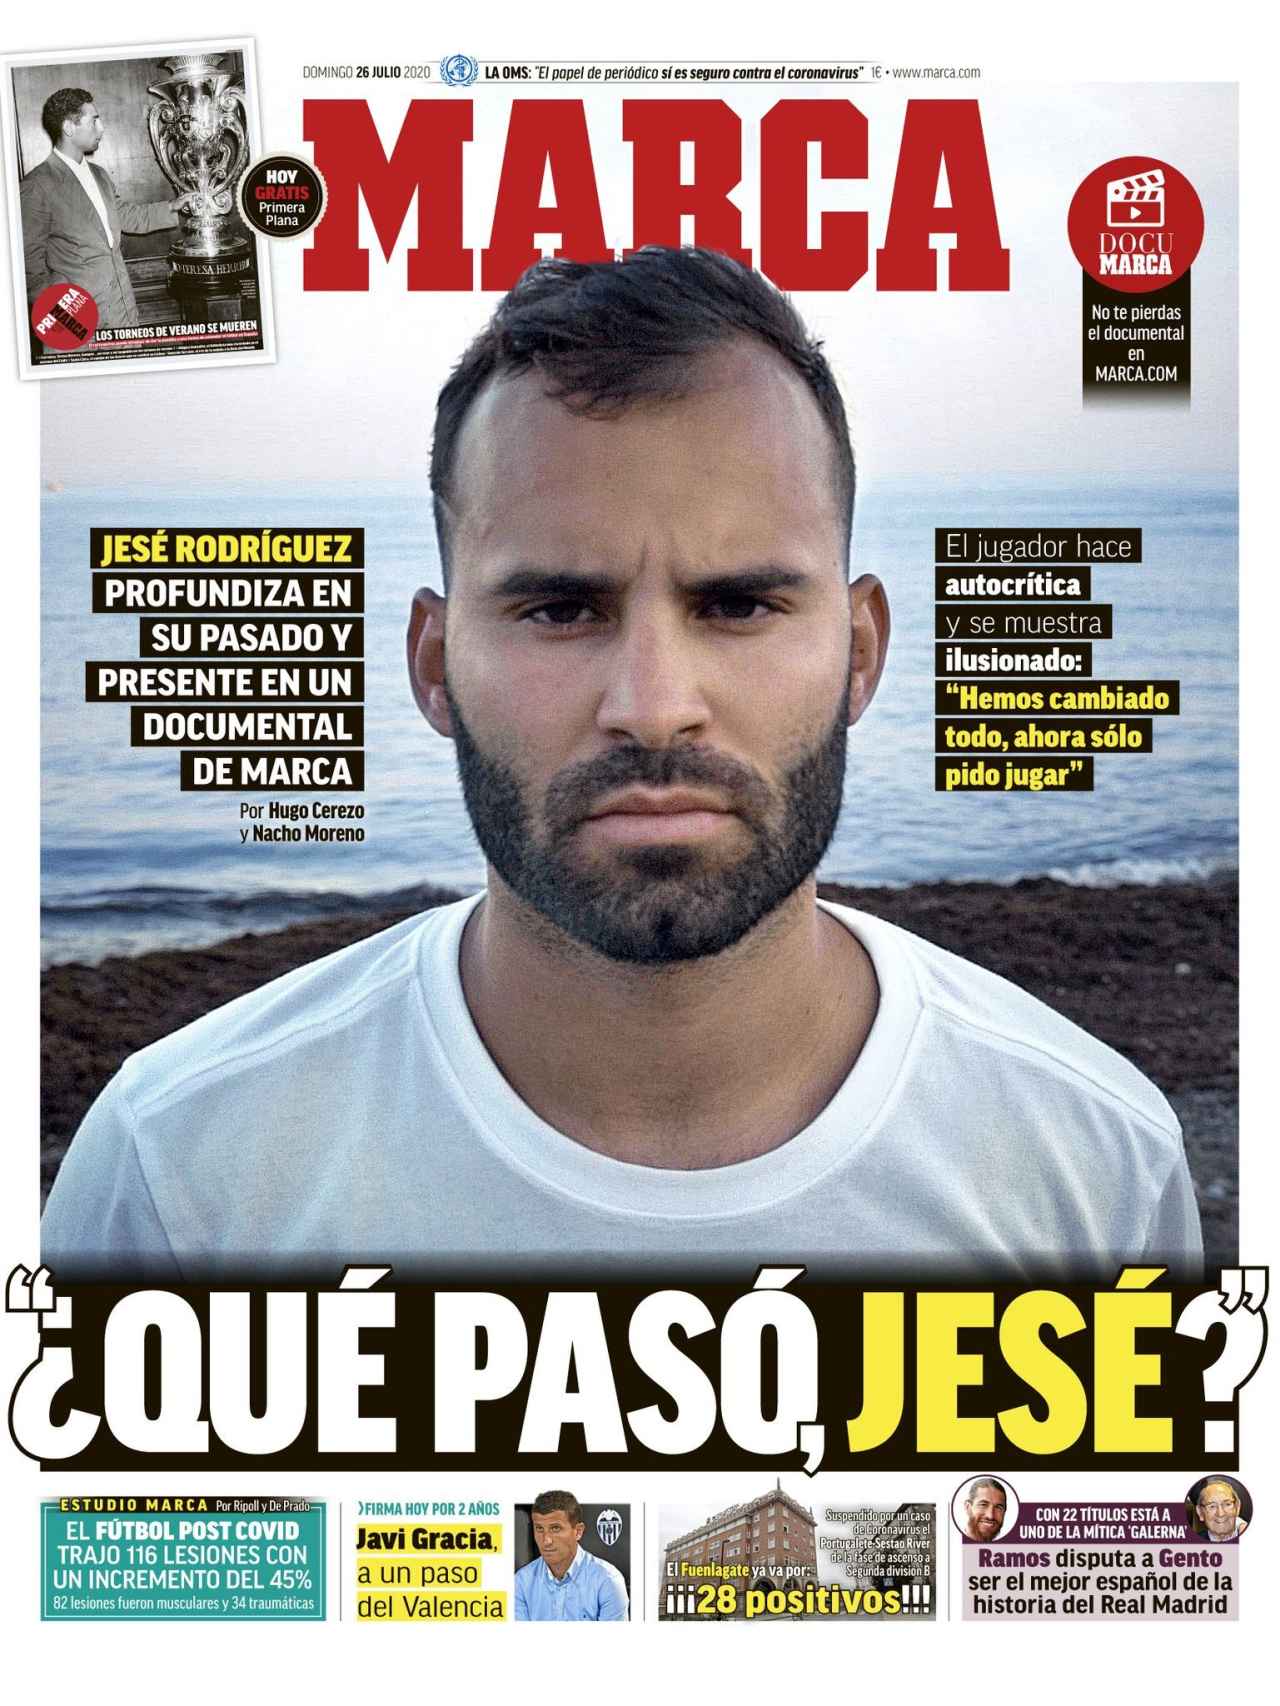 La portada del diario MARCA (26/07/2020)